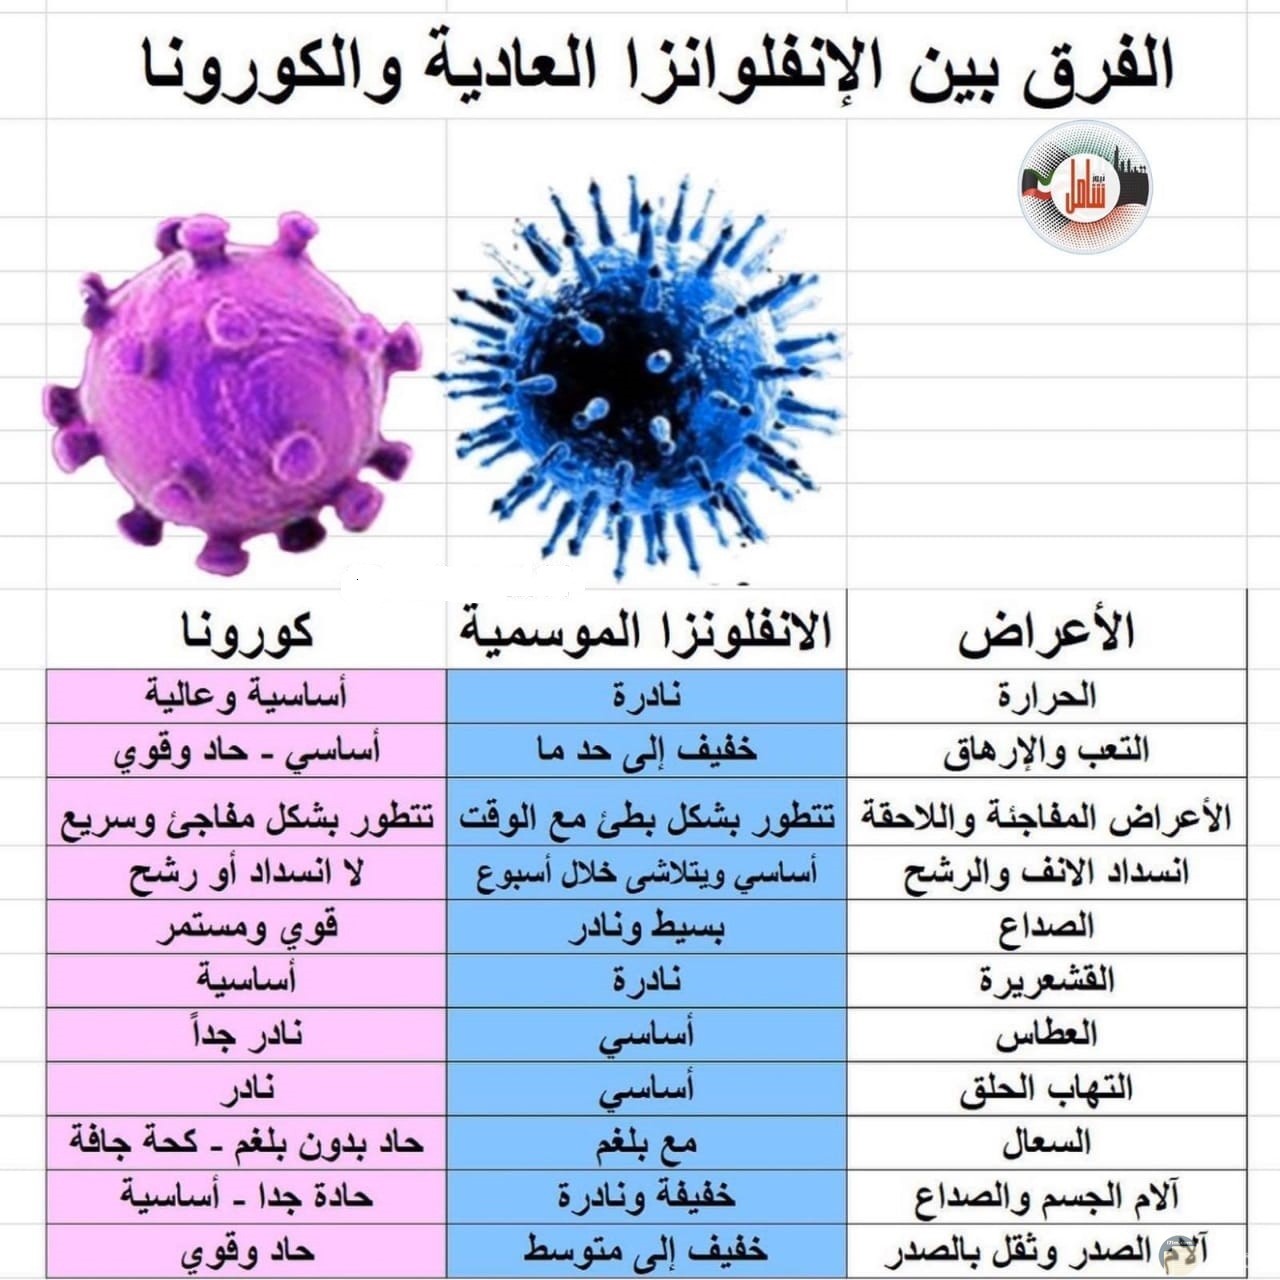 الفرق بين أعراض فيروس كرونا و فيروس الانفلونزا العادية.